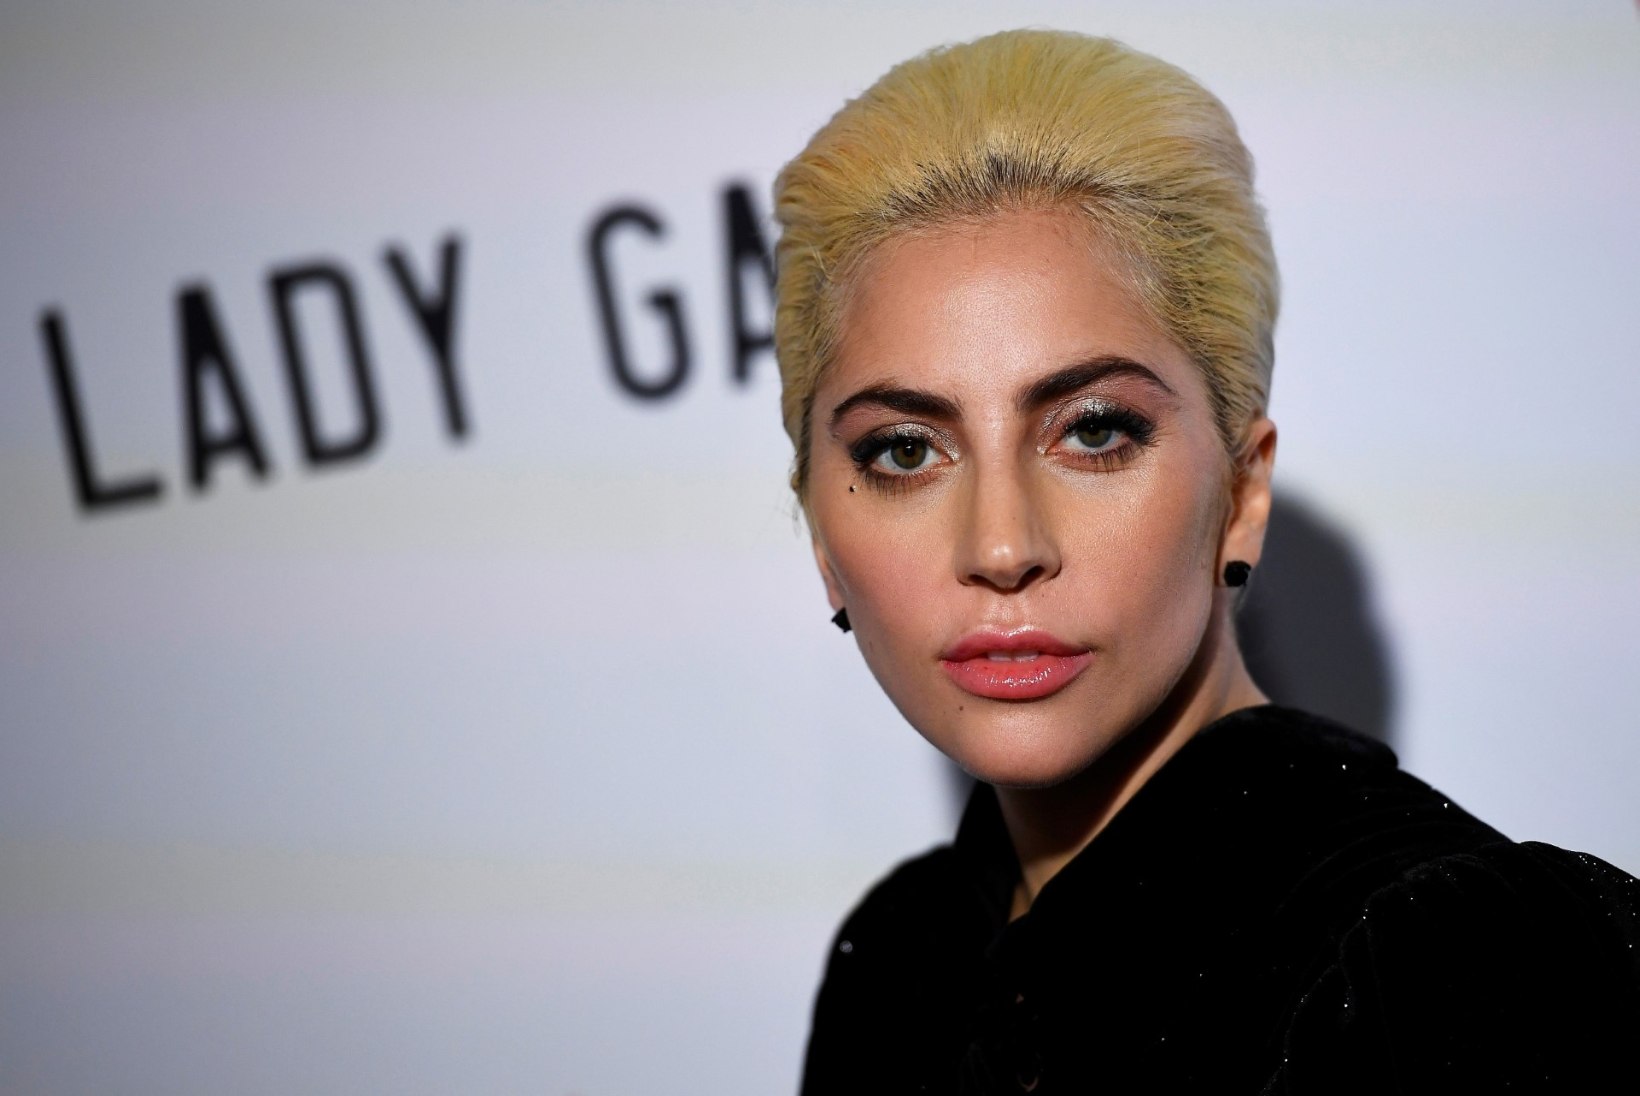 Lady Gaga kannatab traumajärgse stressi käes